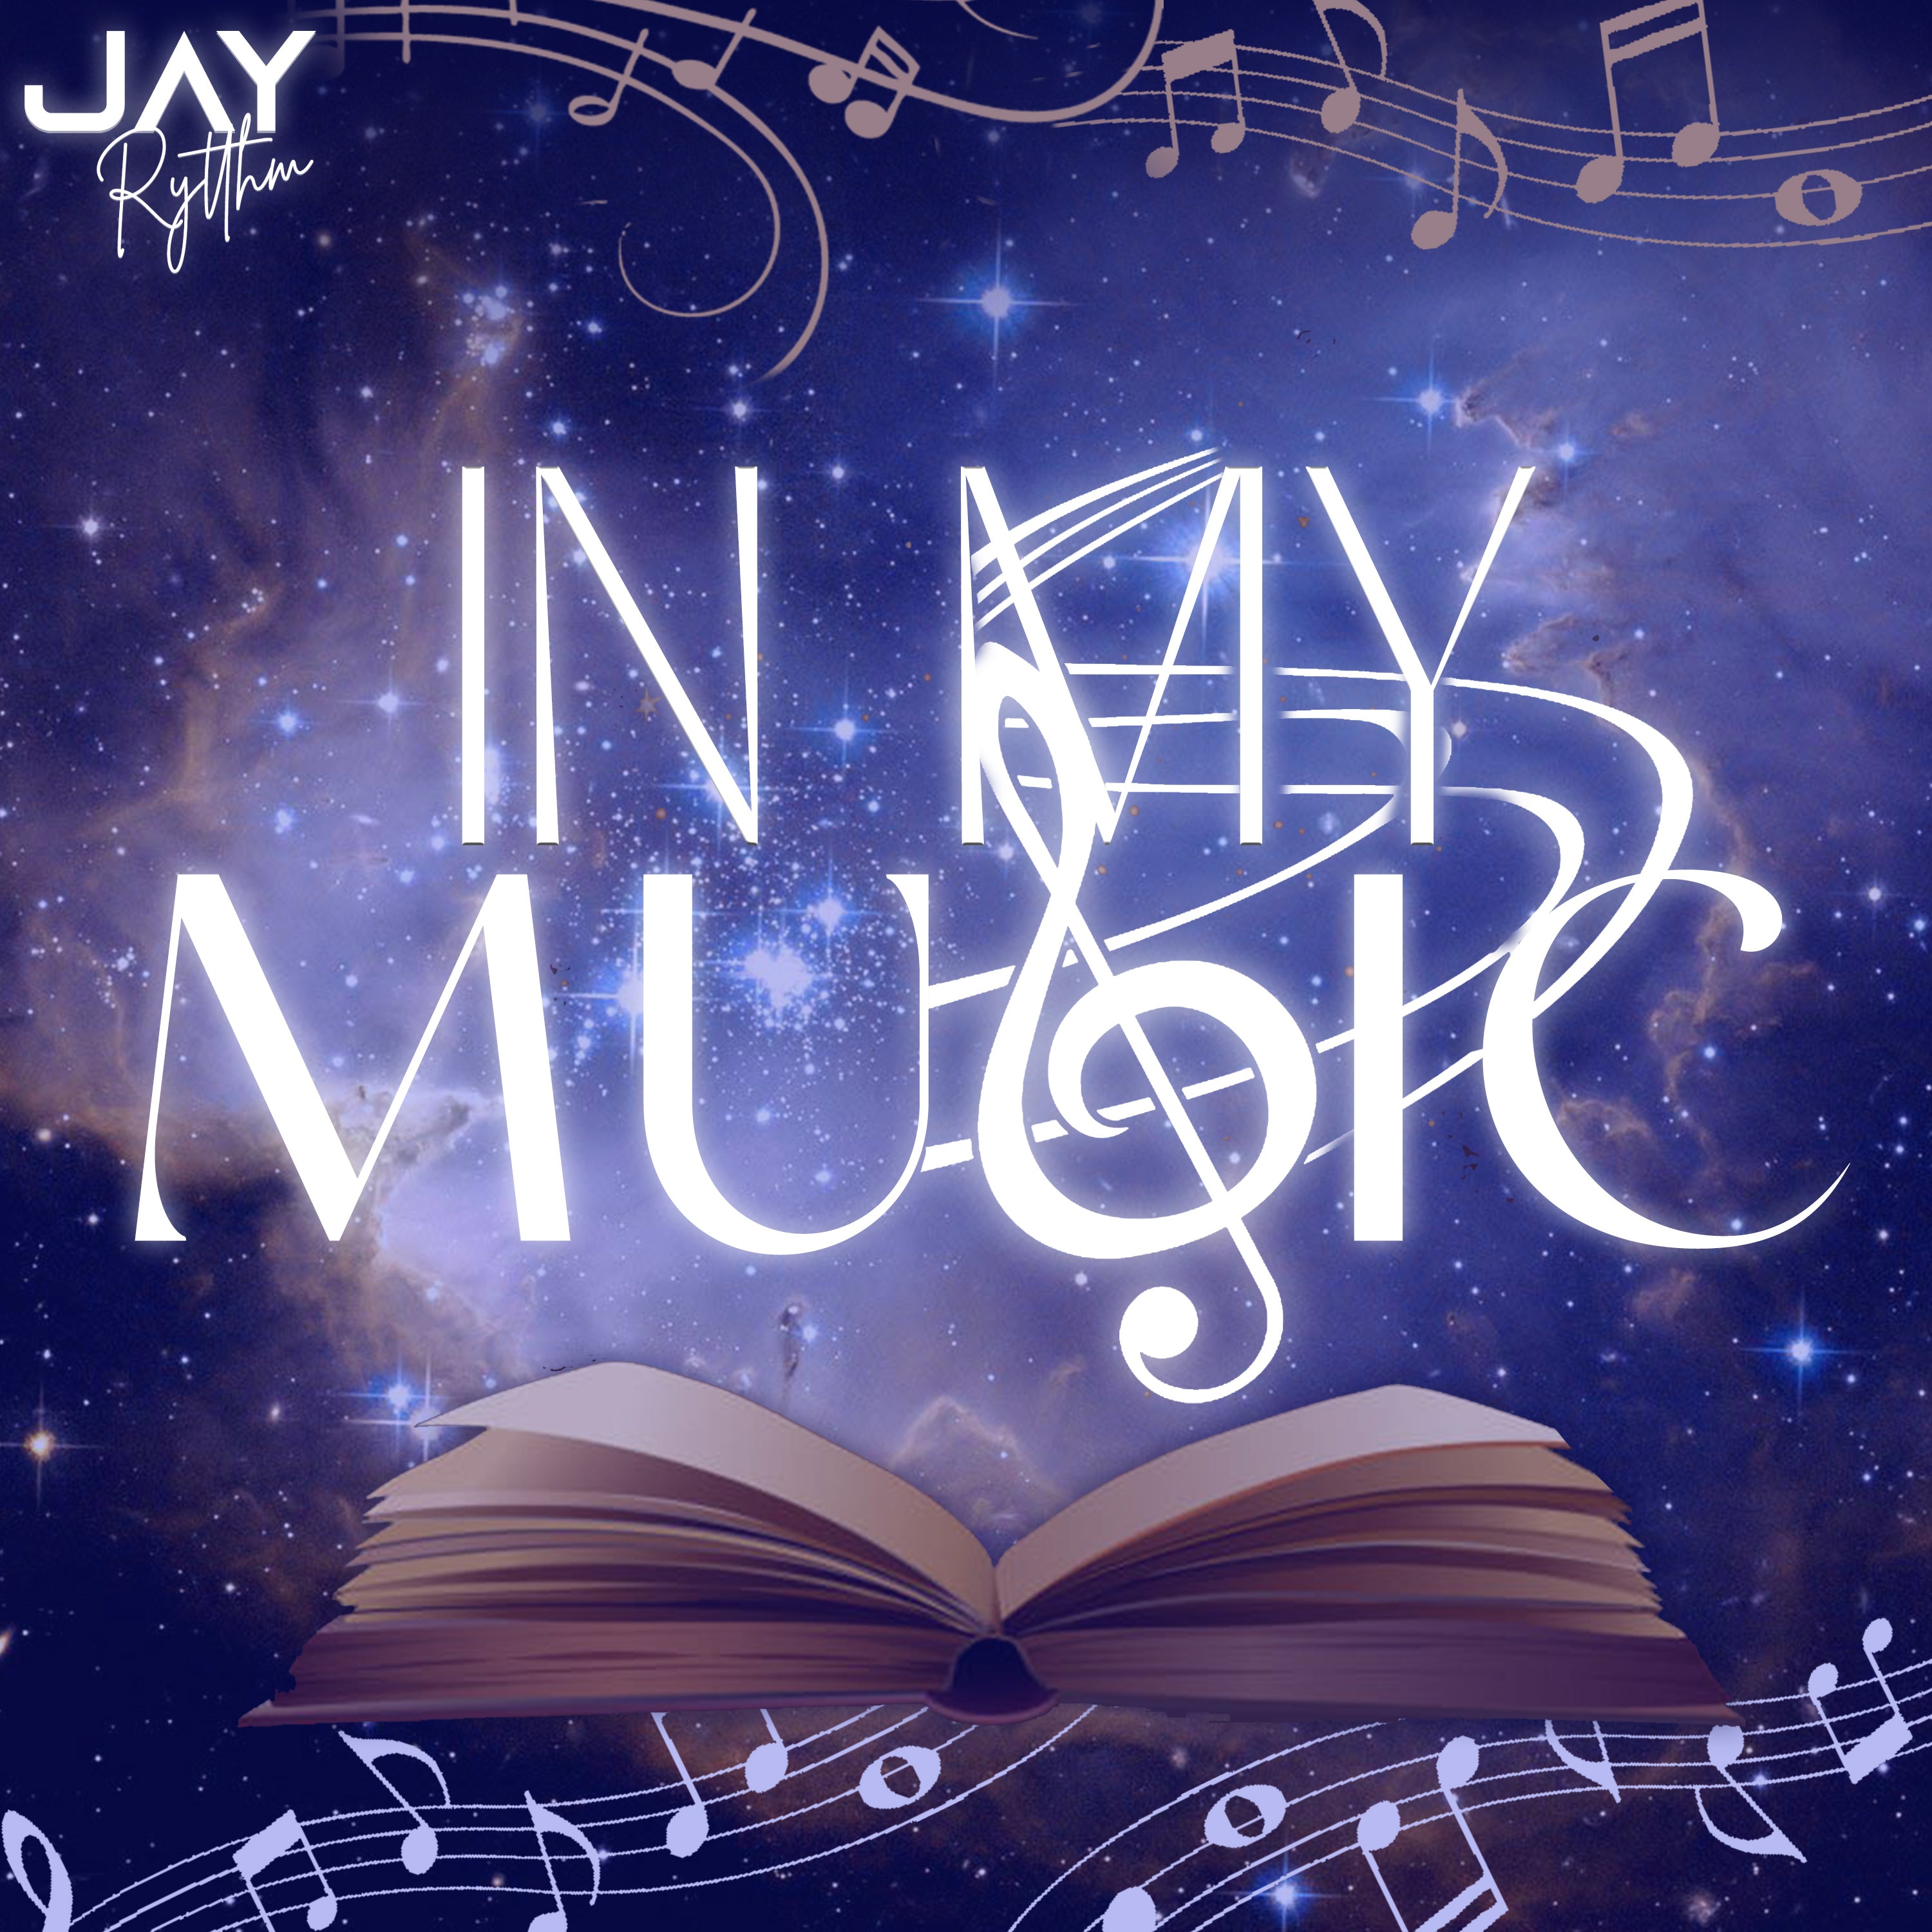 JayRytthm Music & Co. "In My Music" Instrumental Album Release 